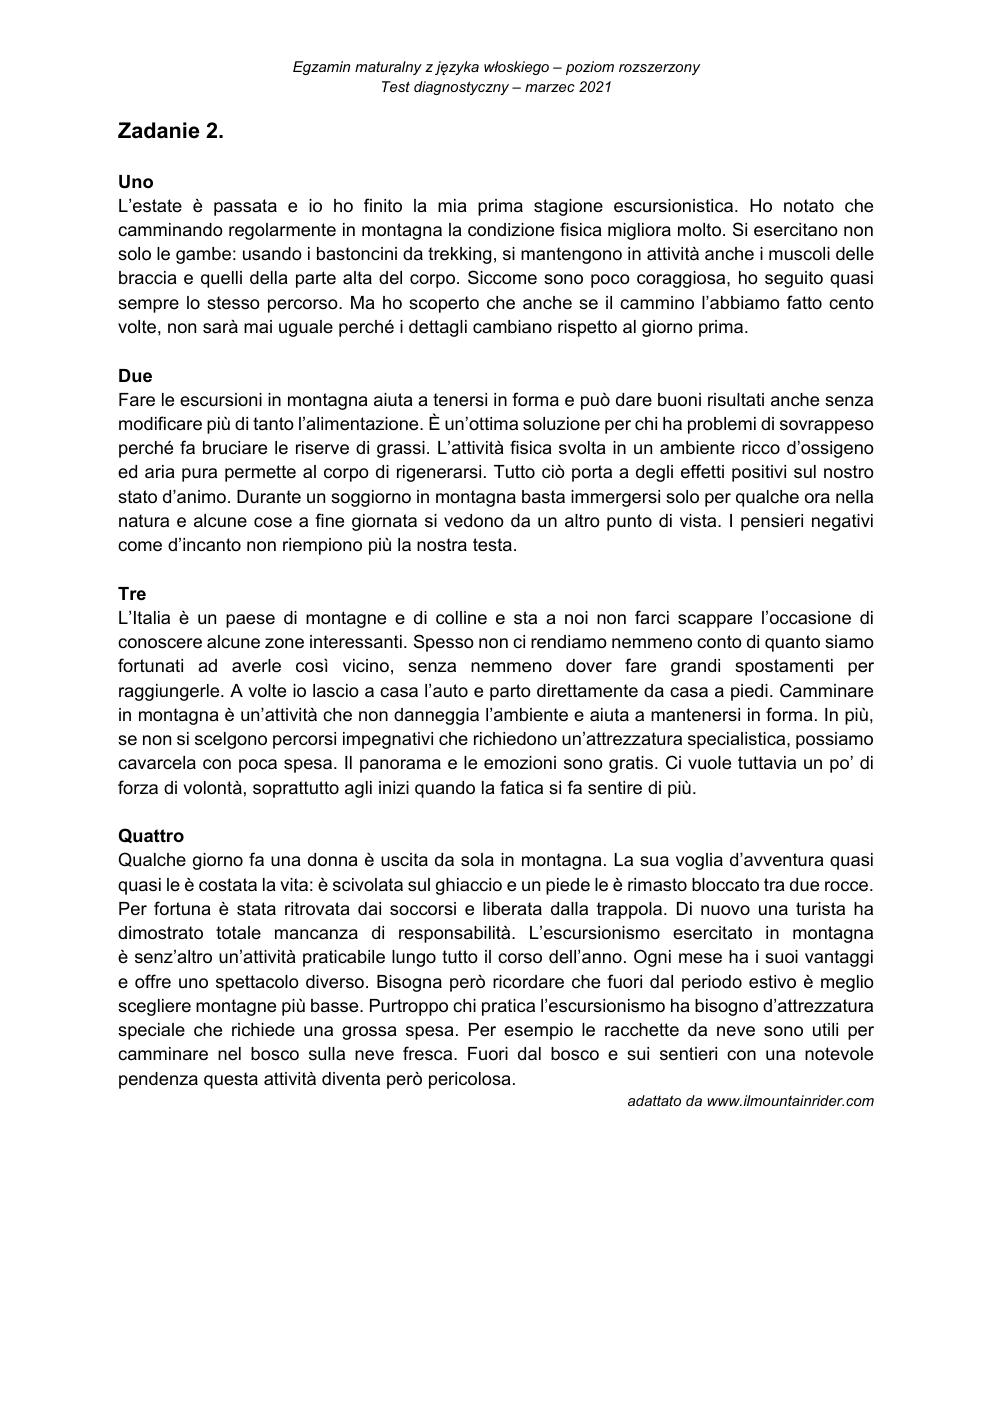 transkrypcja - włoski rozszerzony - matura 2021 próbna-2